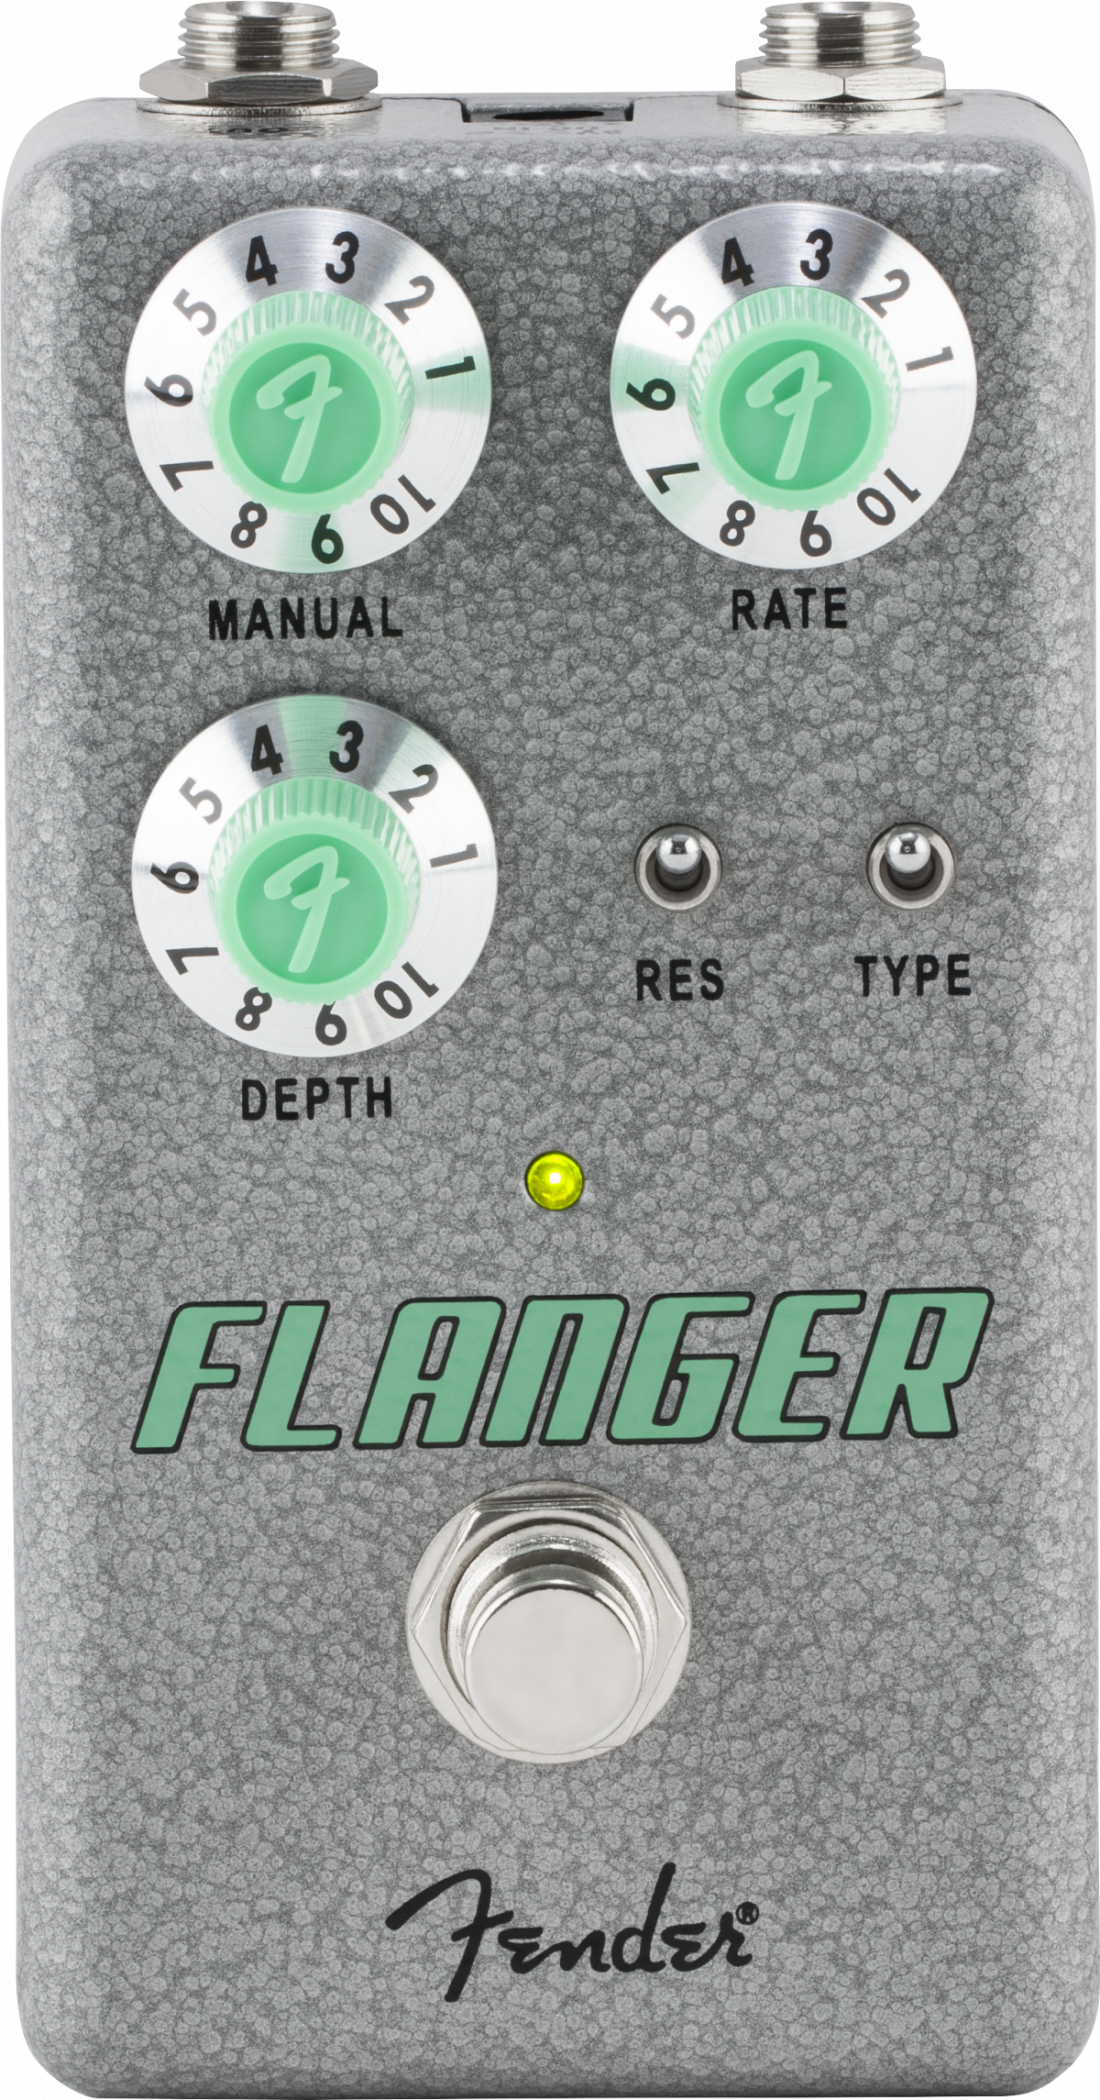 Hlavní obrázek Chorus, flanger, phaser FENDER Hammertone Flanger